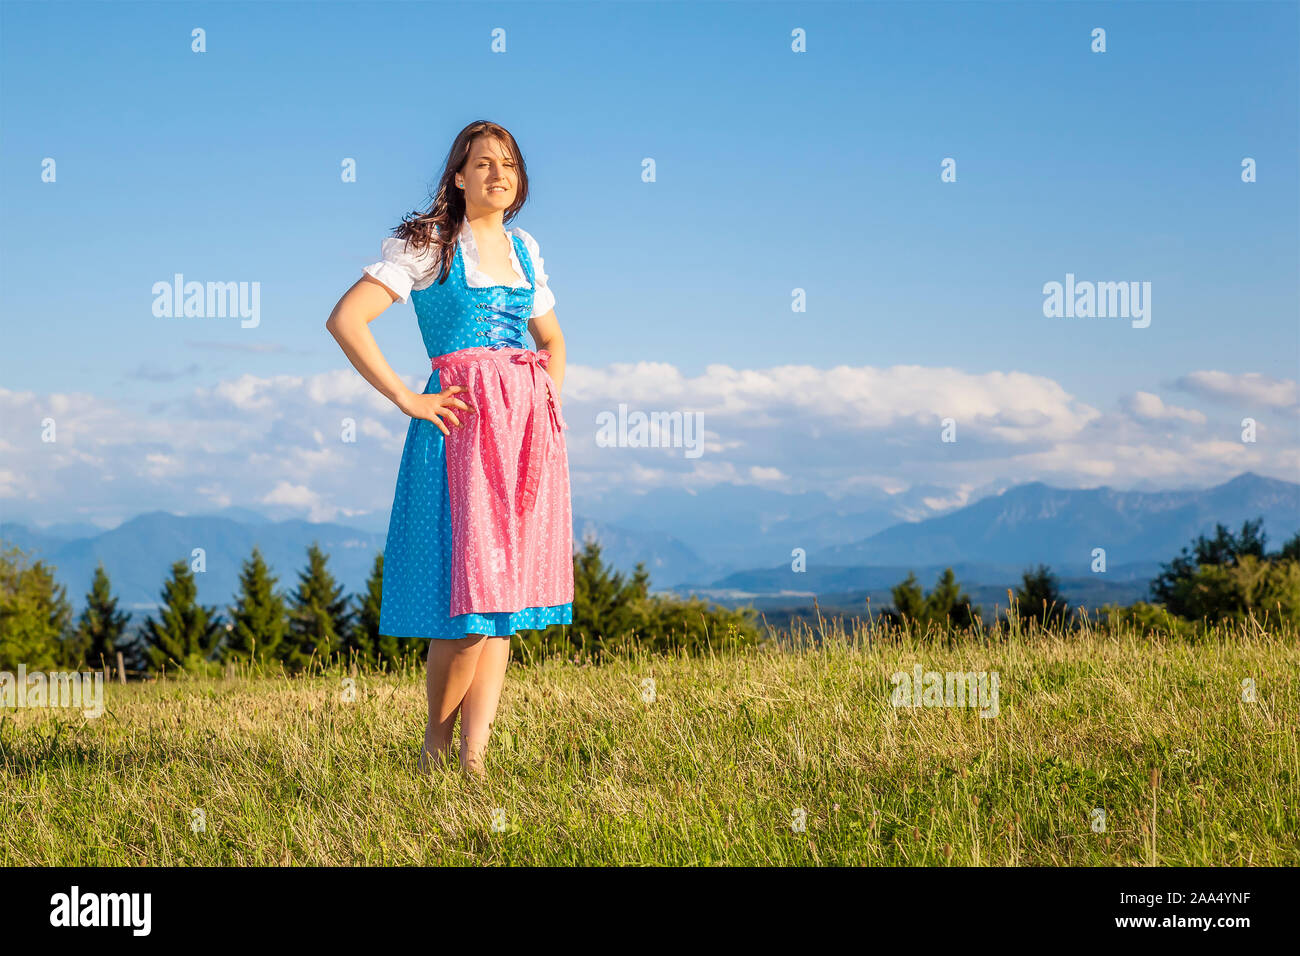 Eine hübsche junge Frau, die ein klassisches bayerisches Trachtengewand traegt Banque D'Images